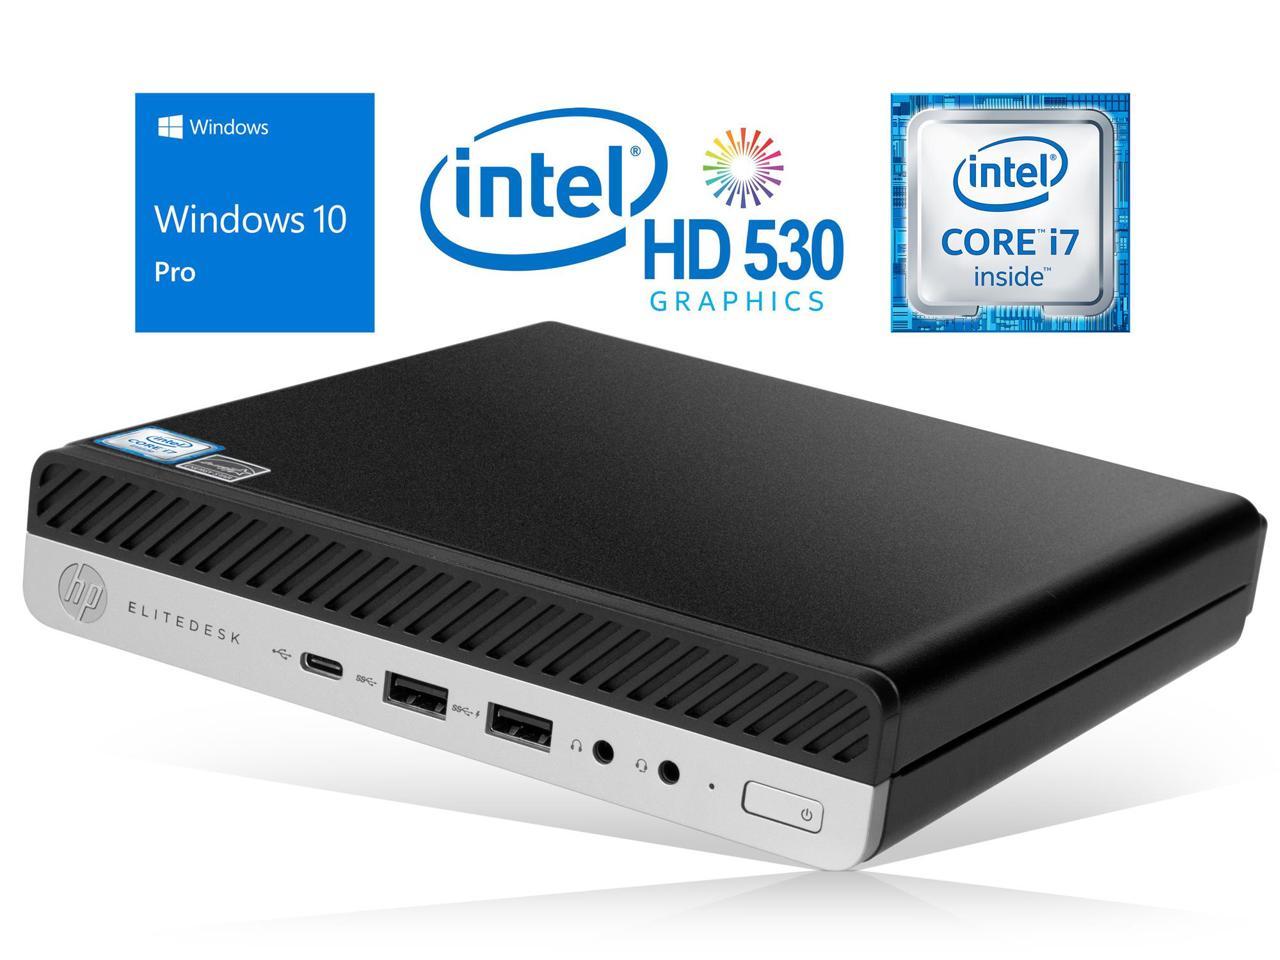 HP EliteDesk 800 G3 Mini PC, Intel Core i7-6700 Upto 4.0GHz, 32GB RAM, 2TB NVMe SSD + 1TB HDD, DisplayPort, Wi-Fi, Bluetooth, Windows 10 Pro